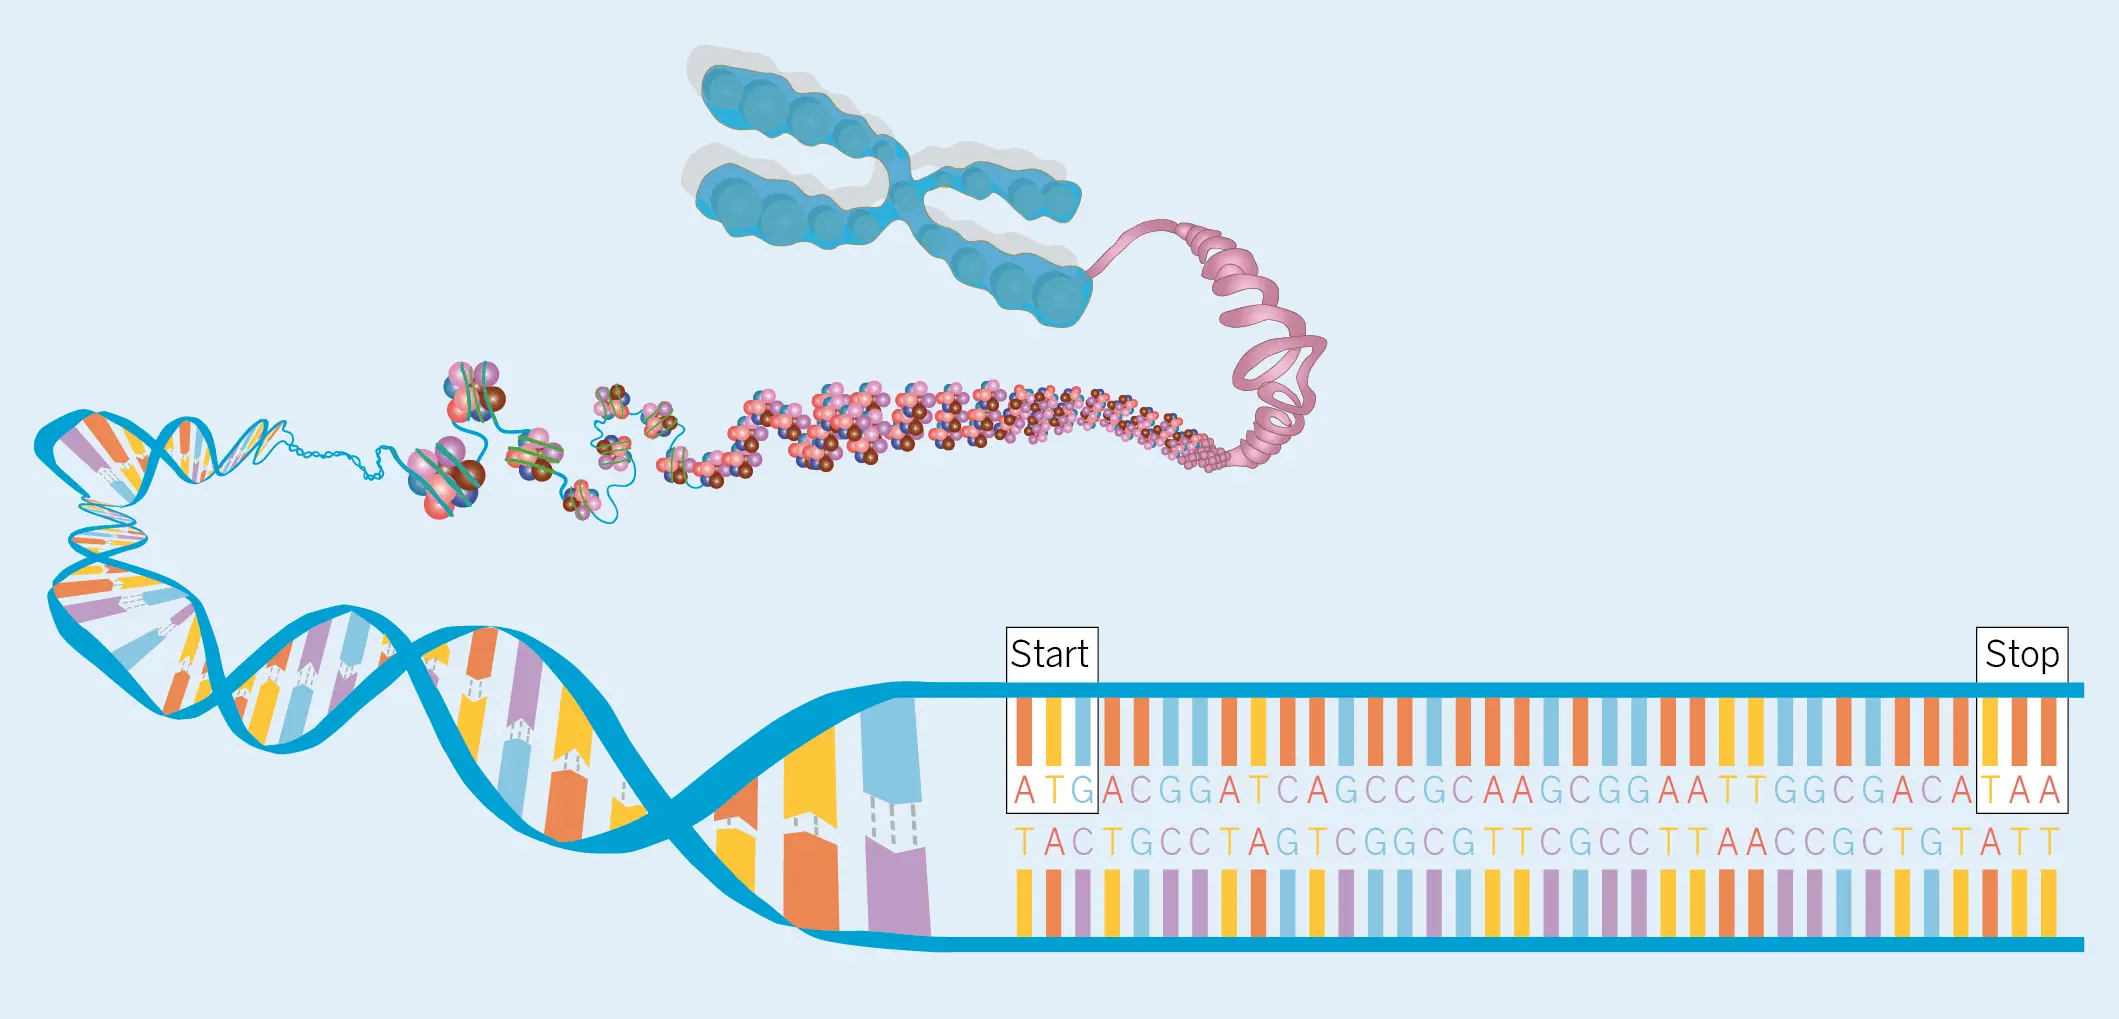 Figura 2. Representación esquemática de un cromosoma que muestra la secuencia genética con las señales de inicio (start) y parada (stop) de la traducción a proteína